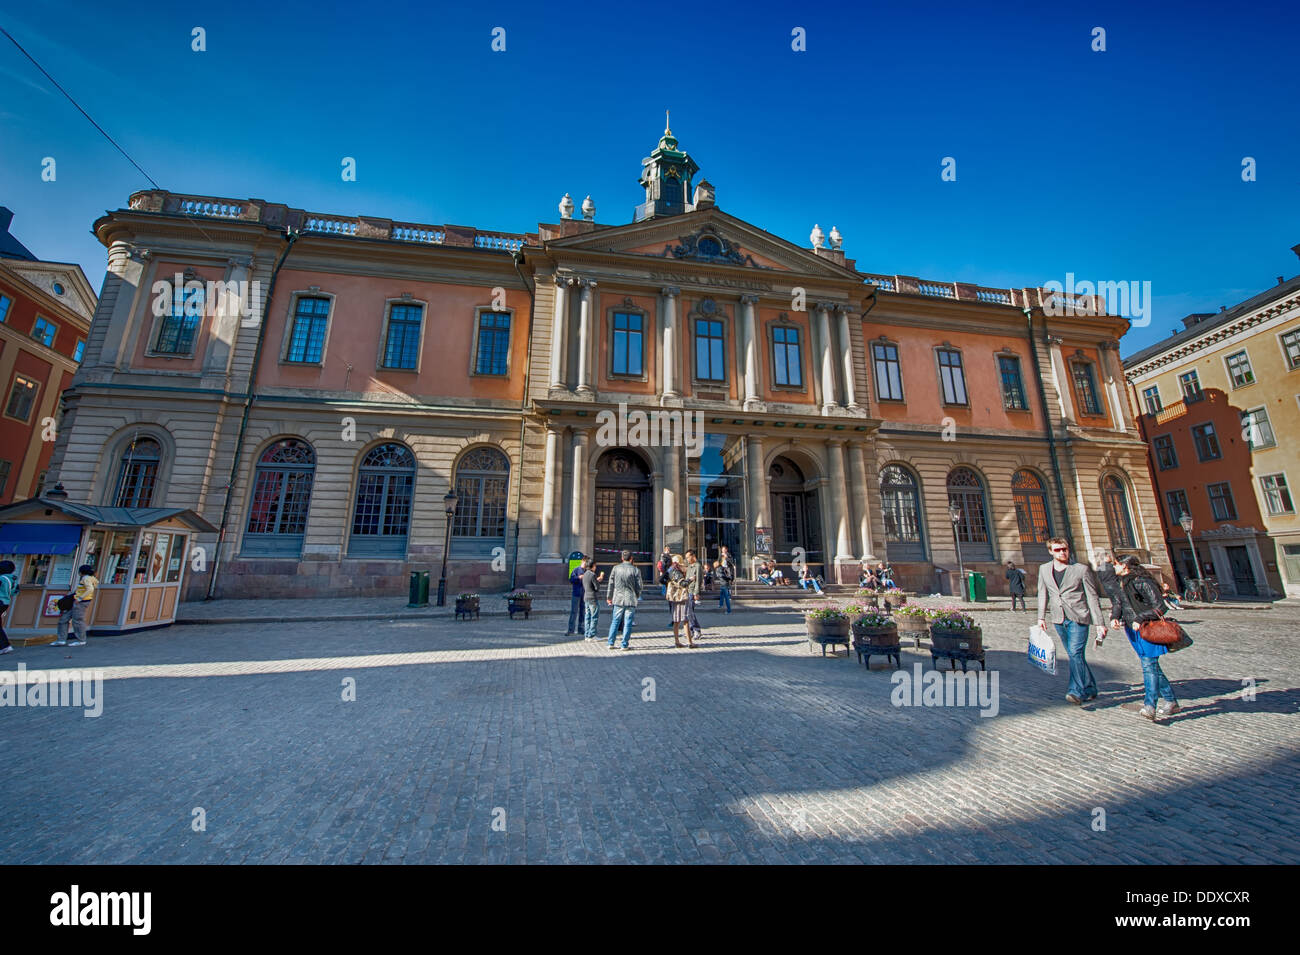 Los turistas admirar el edificio de la bolsa de Estocolmo. El edificio en el casco antiguo de la ciudad es el hogar de la academia sueca. Foto de stock